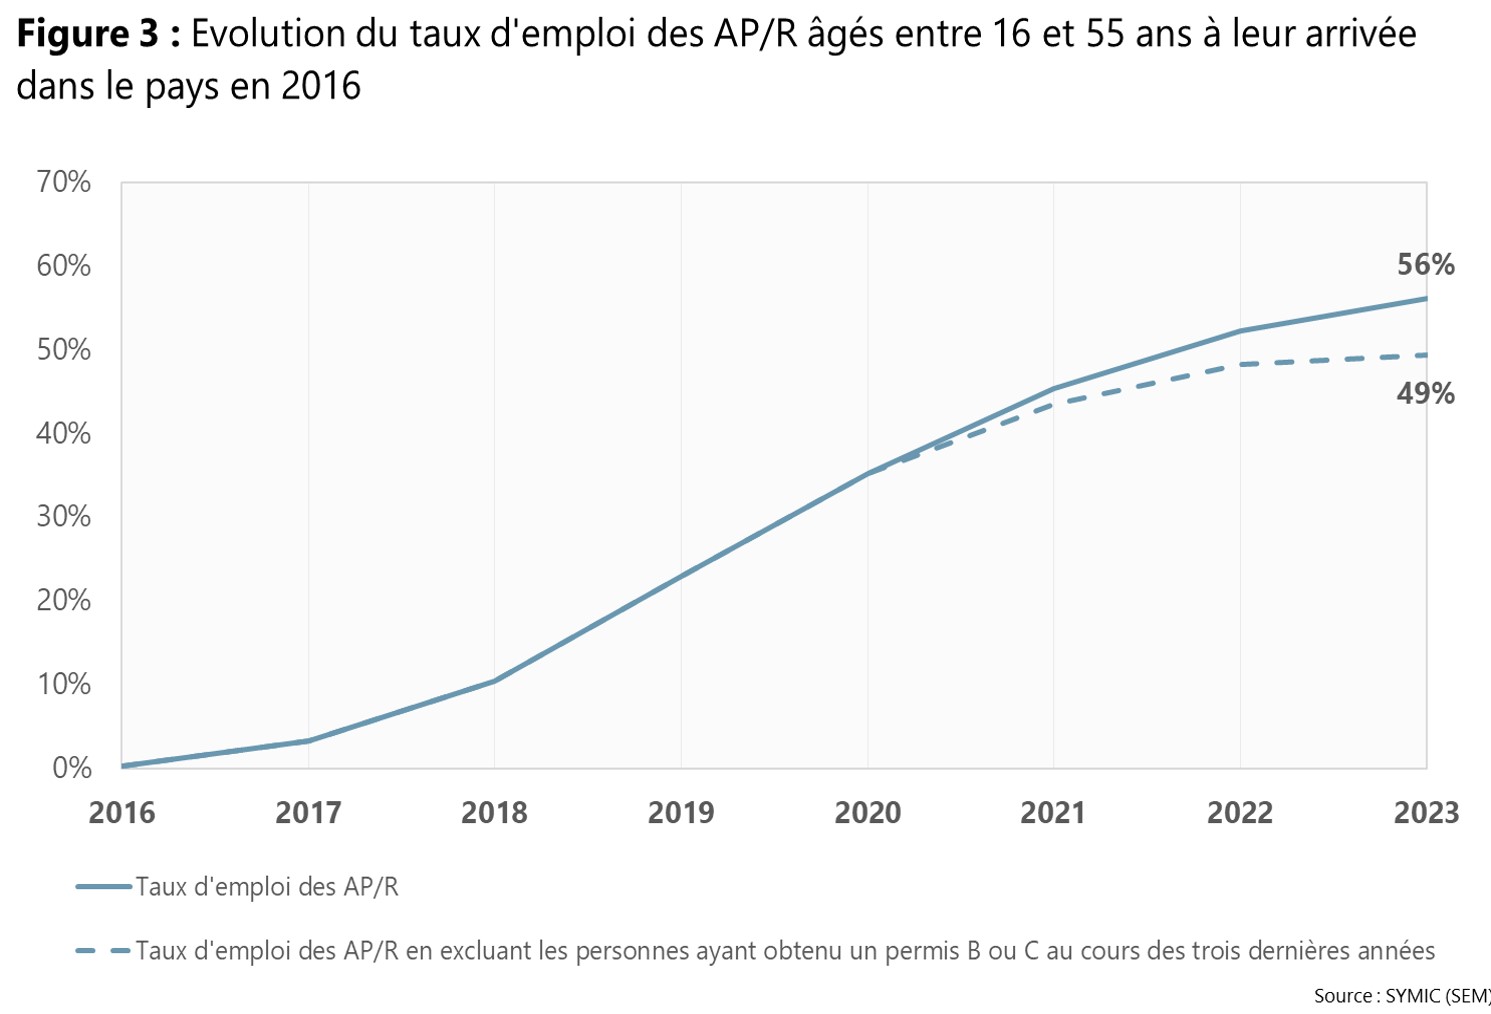 Figure 3 : Evolution du taux d'emploi des AP/R âgés entre 16 et 55 ans à leur arrivée en Suisse en 2015